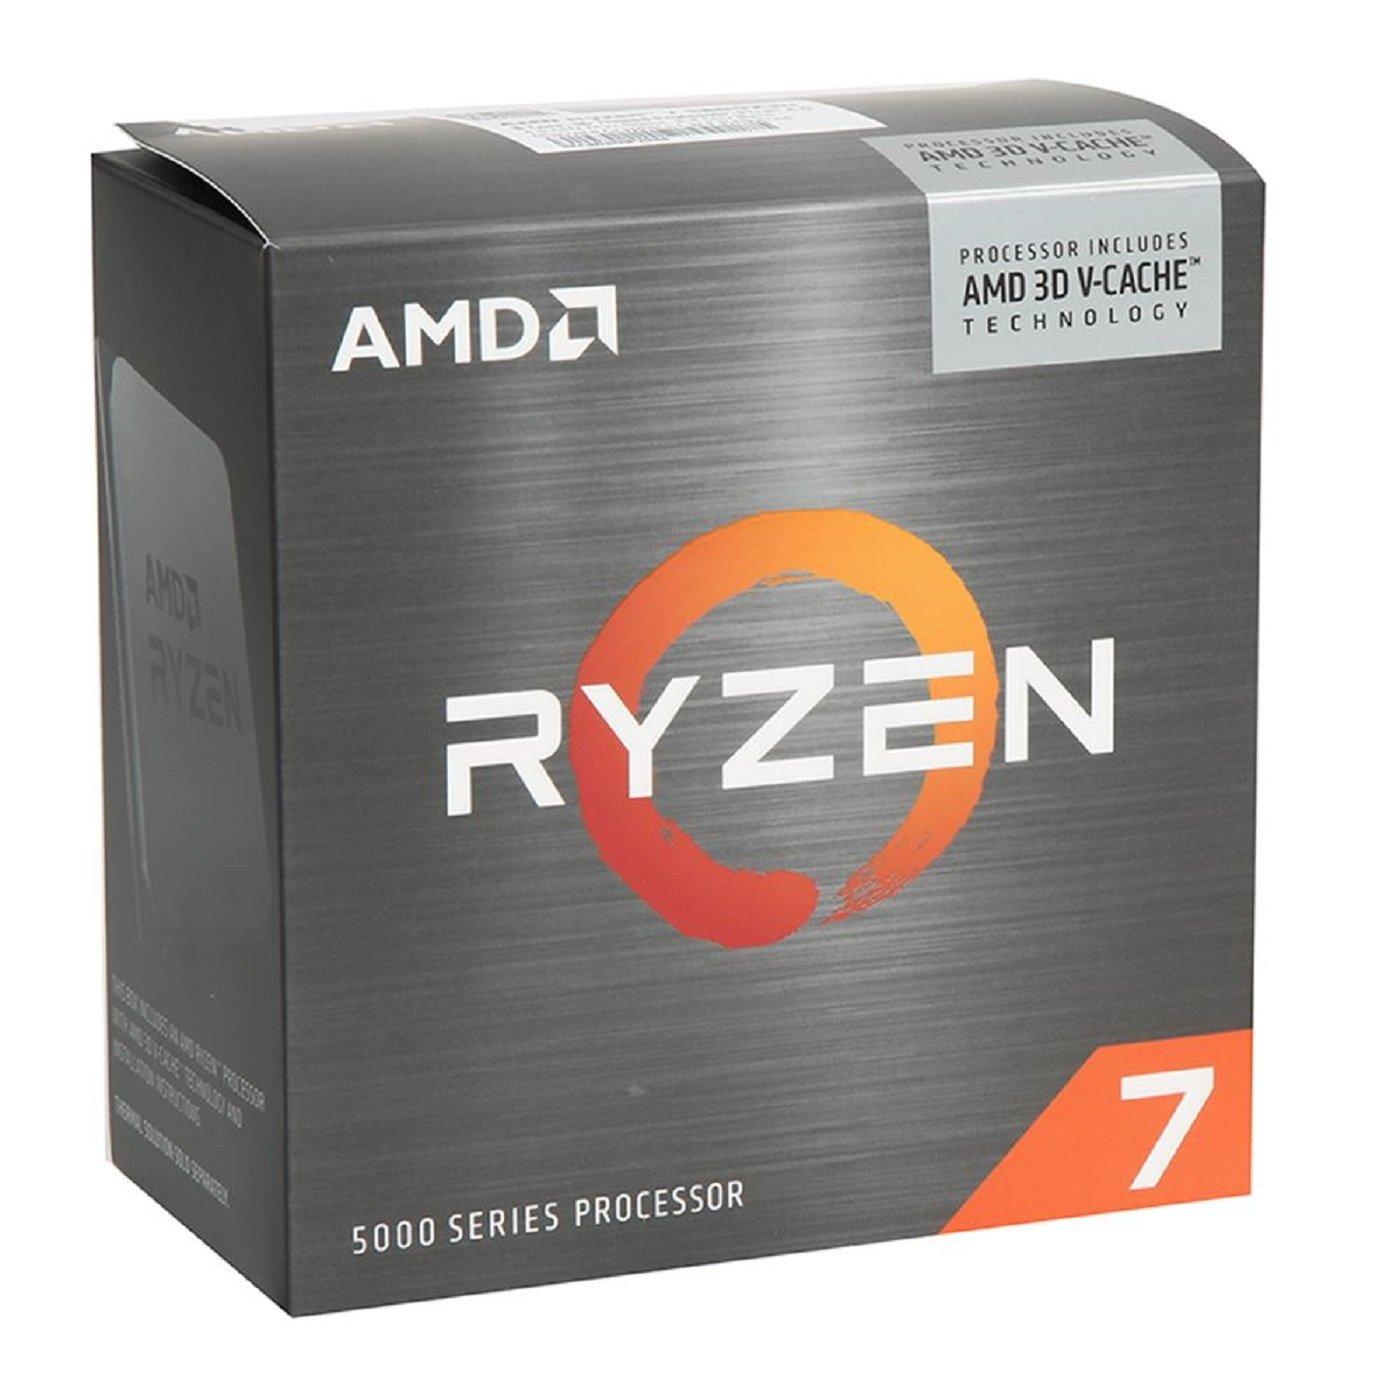 AMD Ryzen 7 5800X3D GHz | 4.5 Processor AM4 Threads 8-core GameStop 16 to up